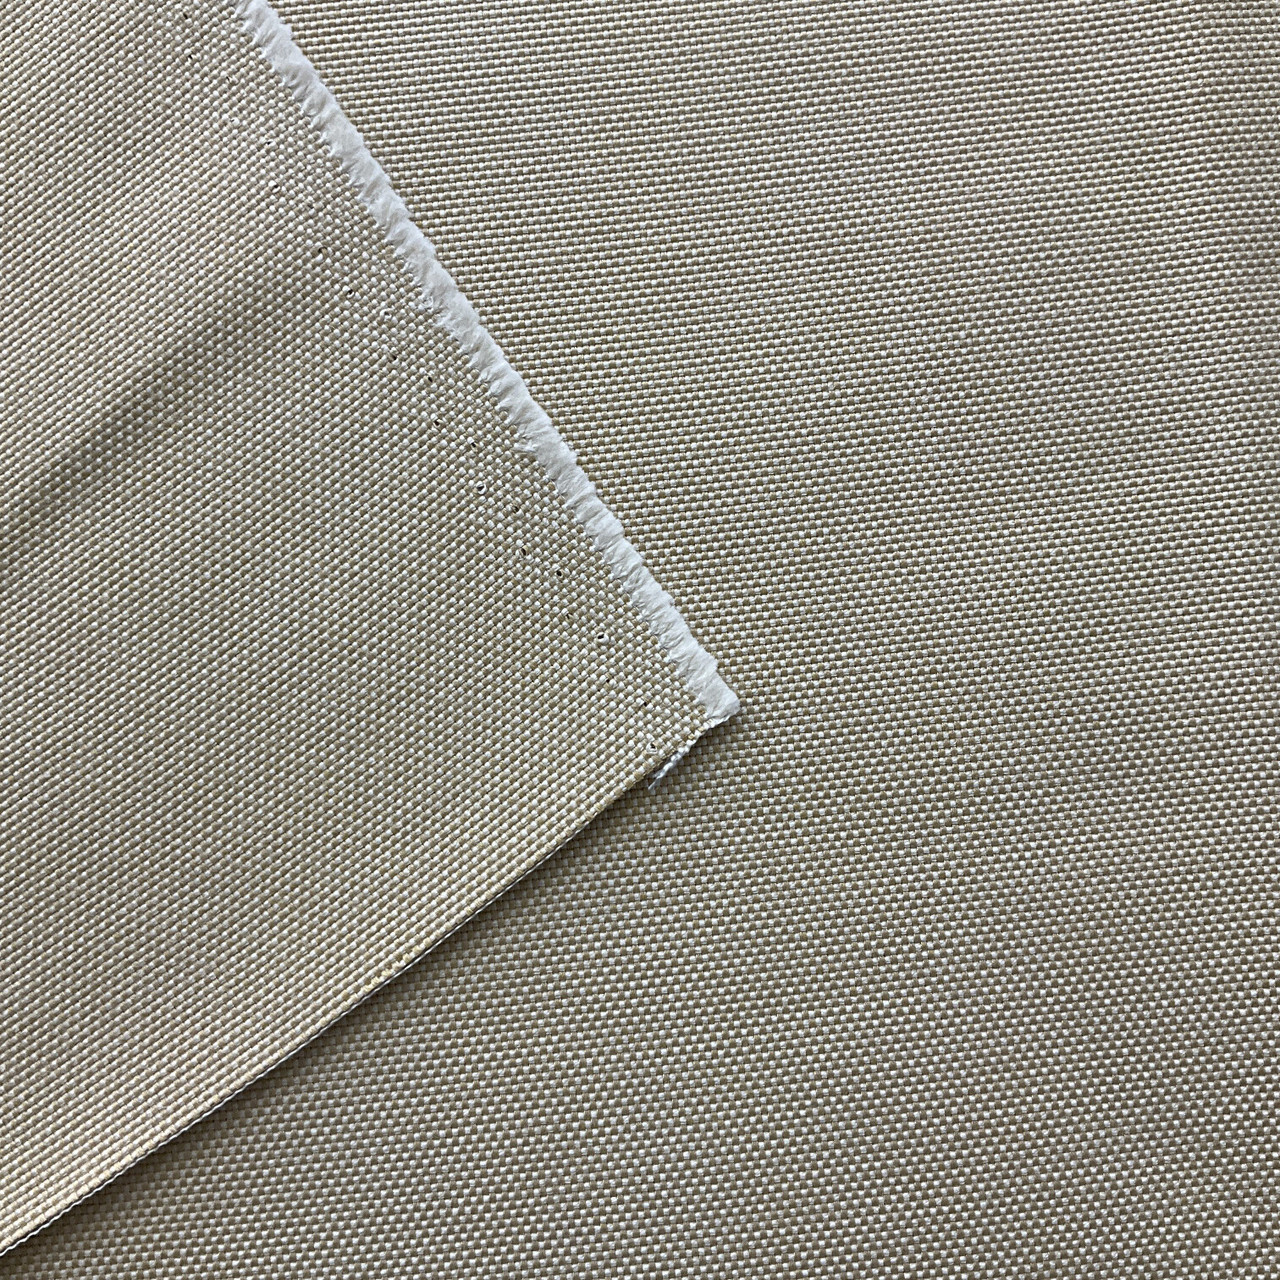 Sunbrella Fabric 32000-0002 Sailcloth Sand 2 3/4 Yards